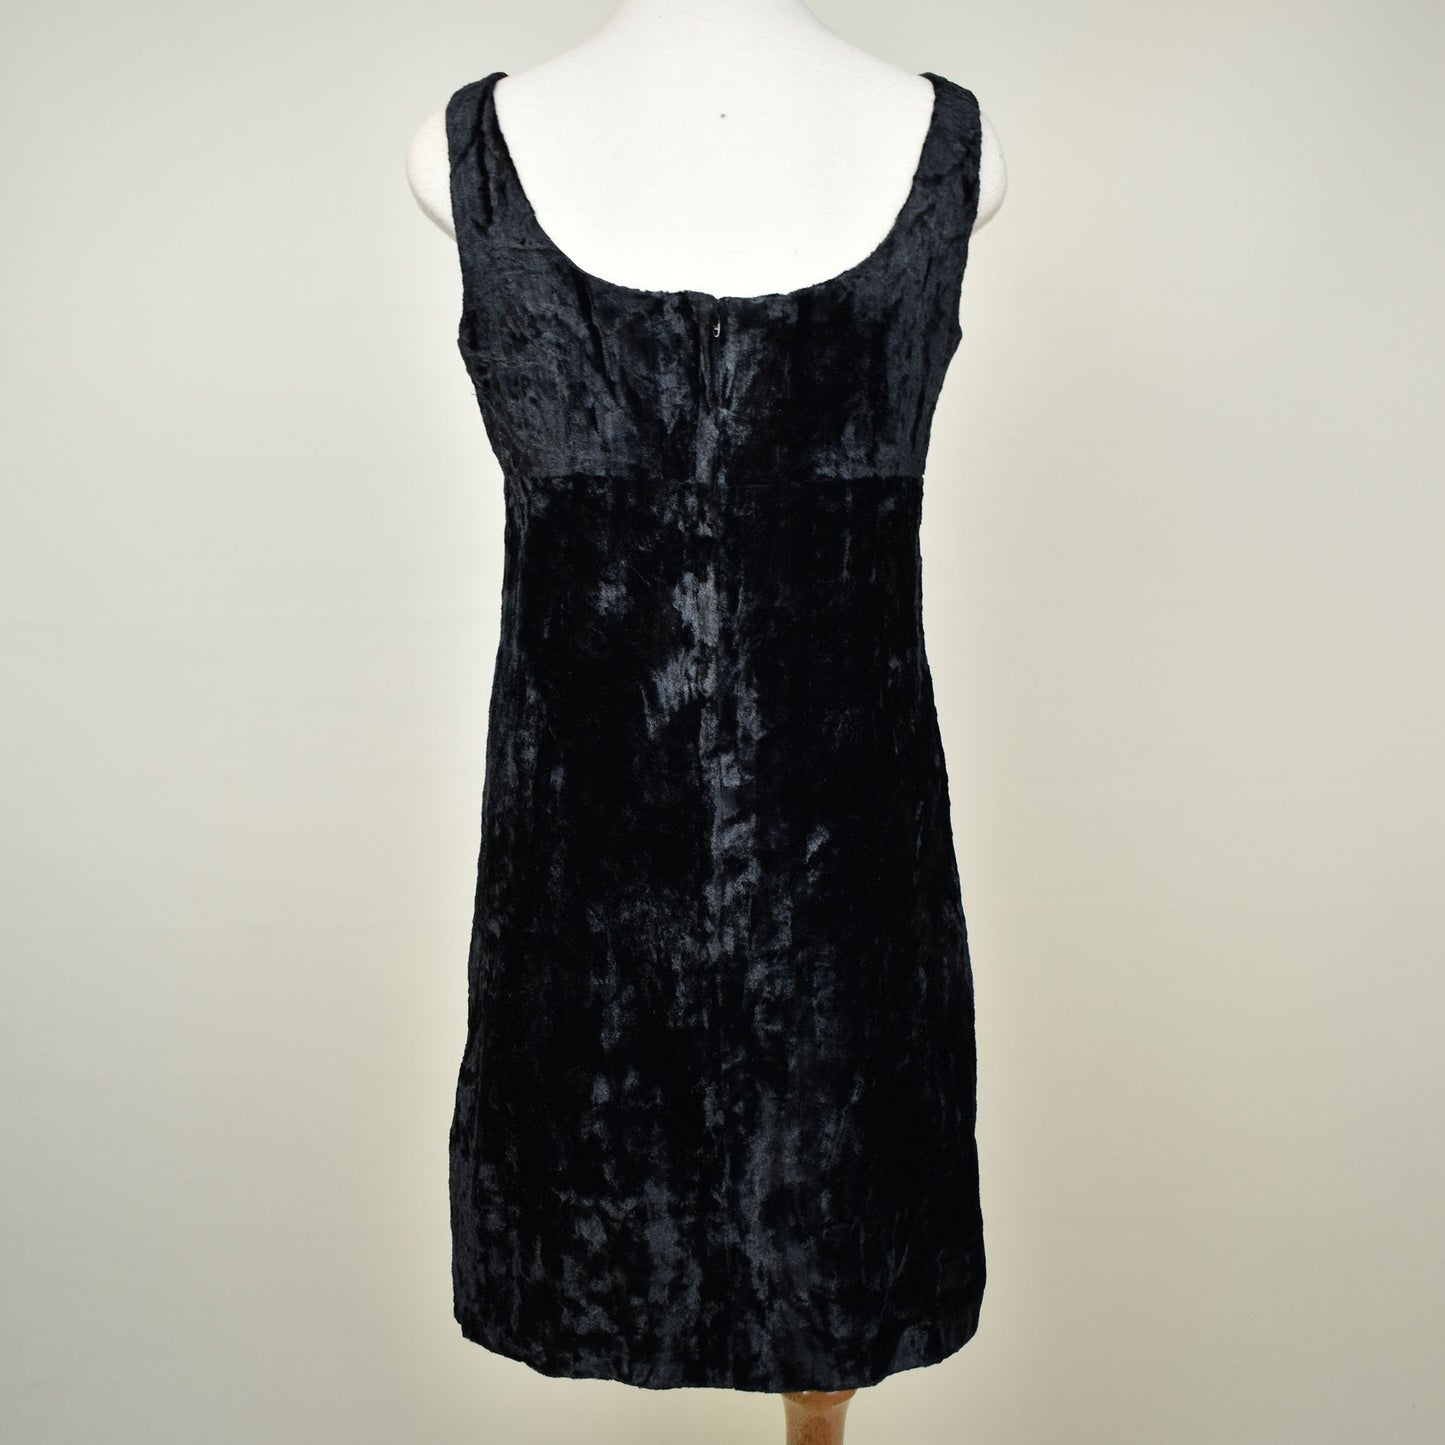 50s Vintage Velvet Sex Kitten Dress in Black by California Sophisticates - Vintage size 13 - Fits Like Medium